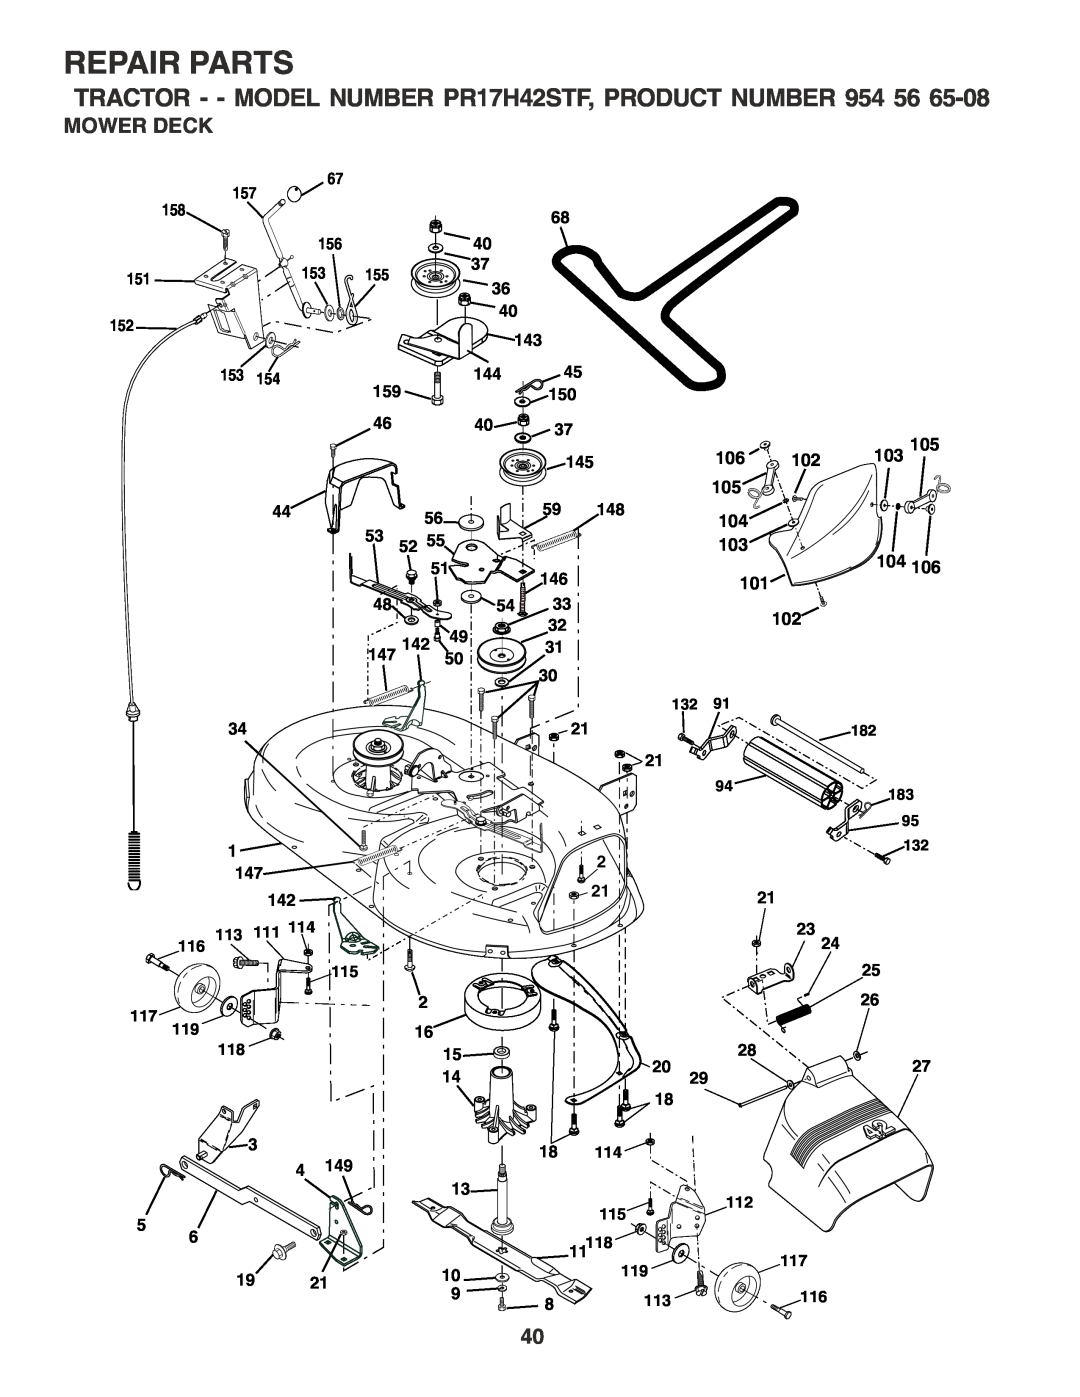 Poulan PR17H42STF owner manual Mower Deck, Repair Parts, 103105 